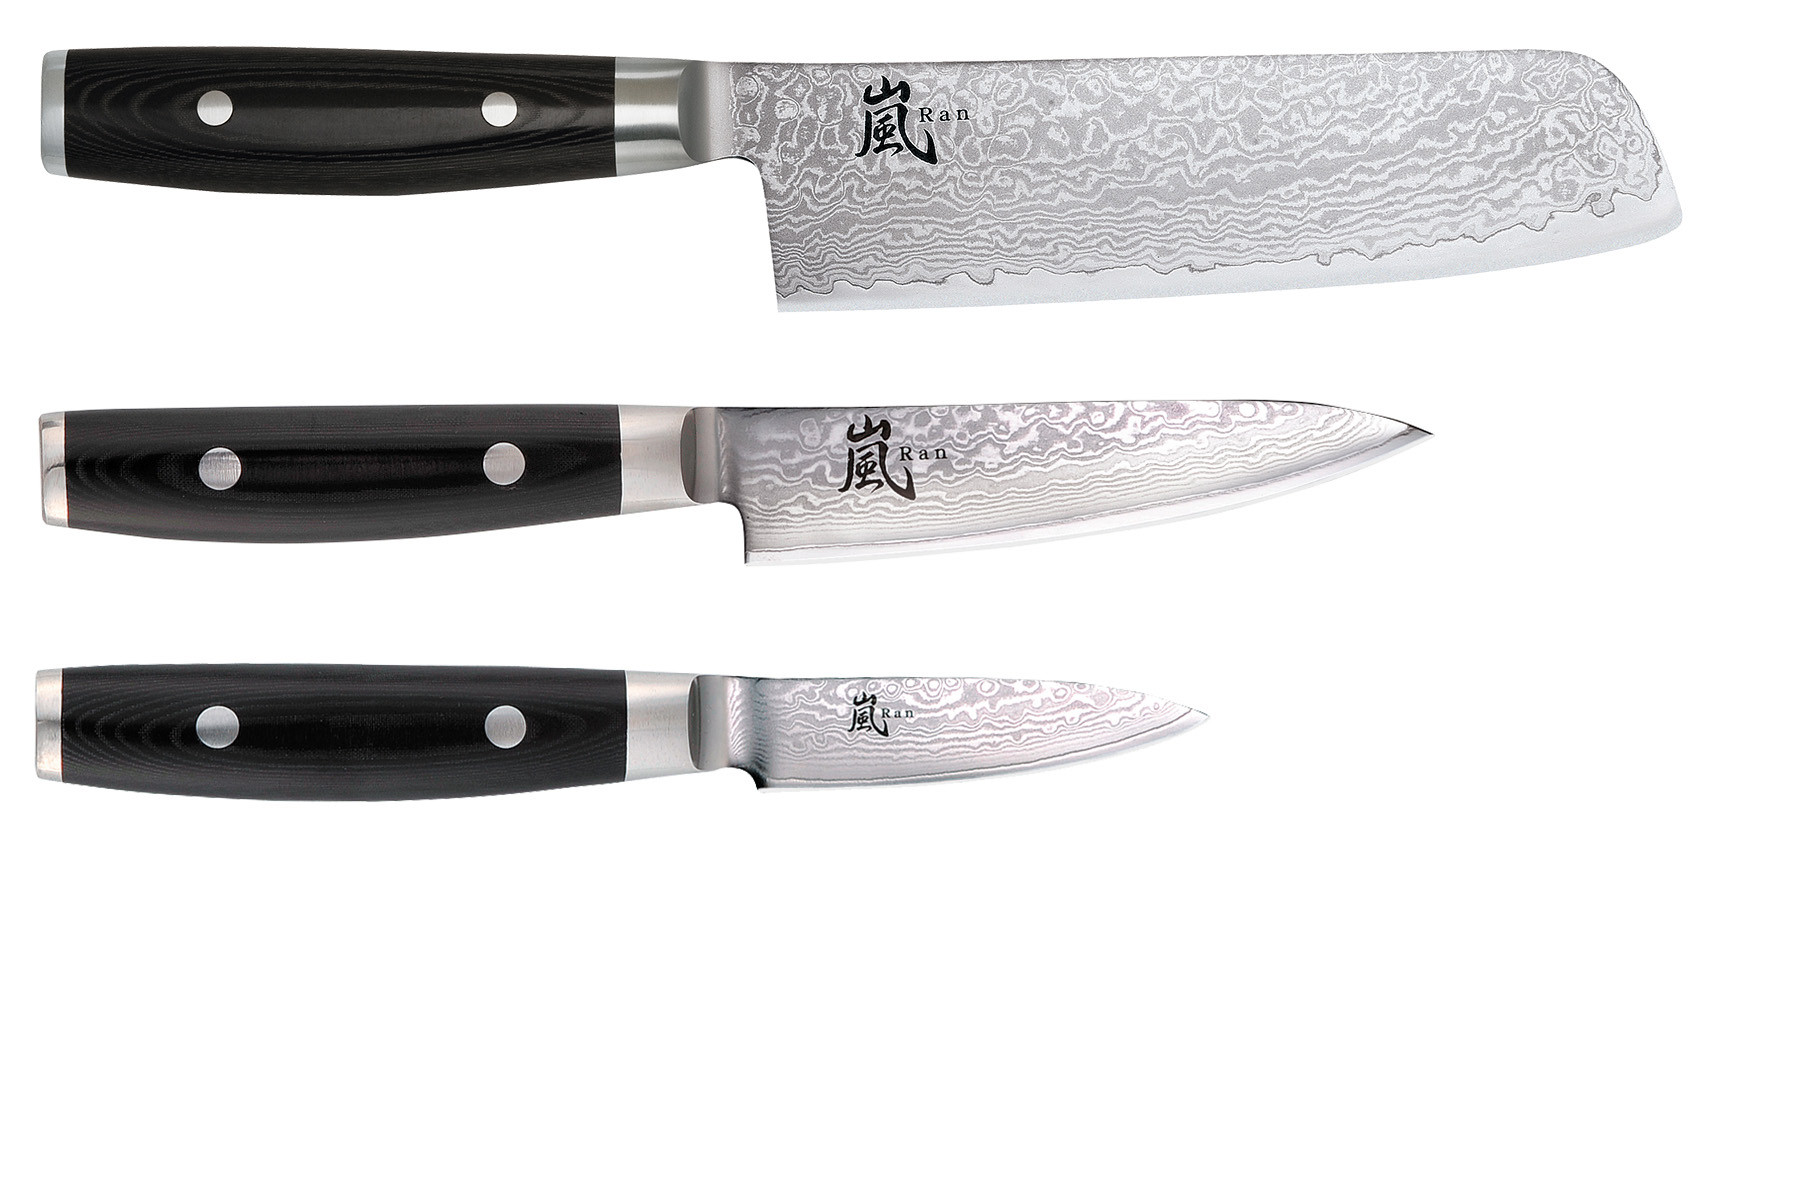 Set de 3 couteaux japonais Yaxell Ran - Forme vegan